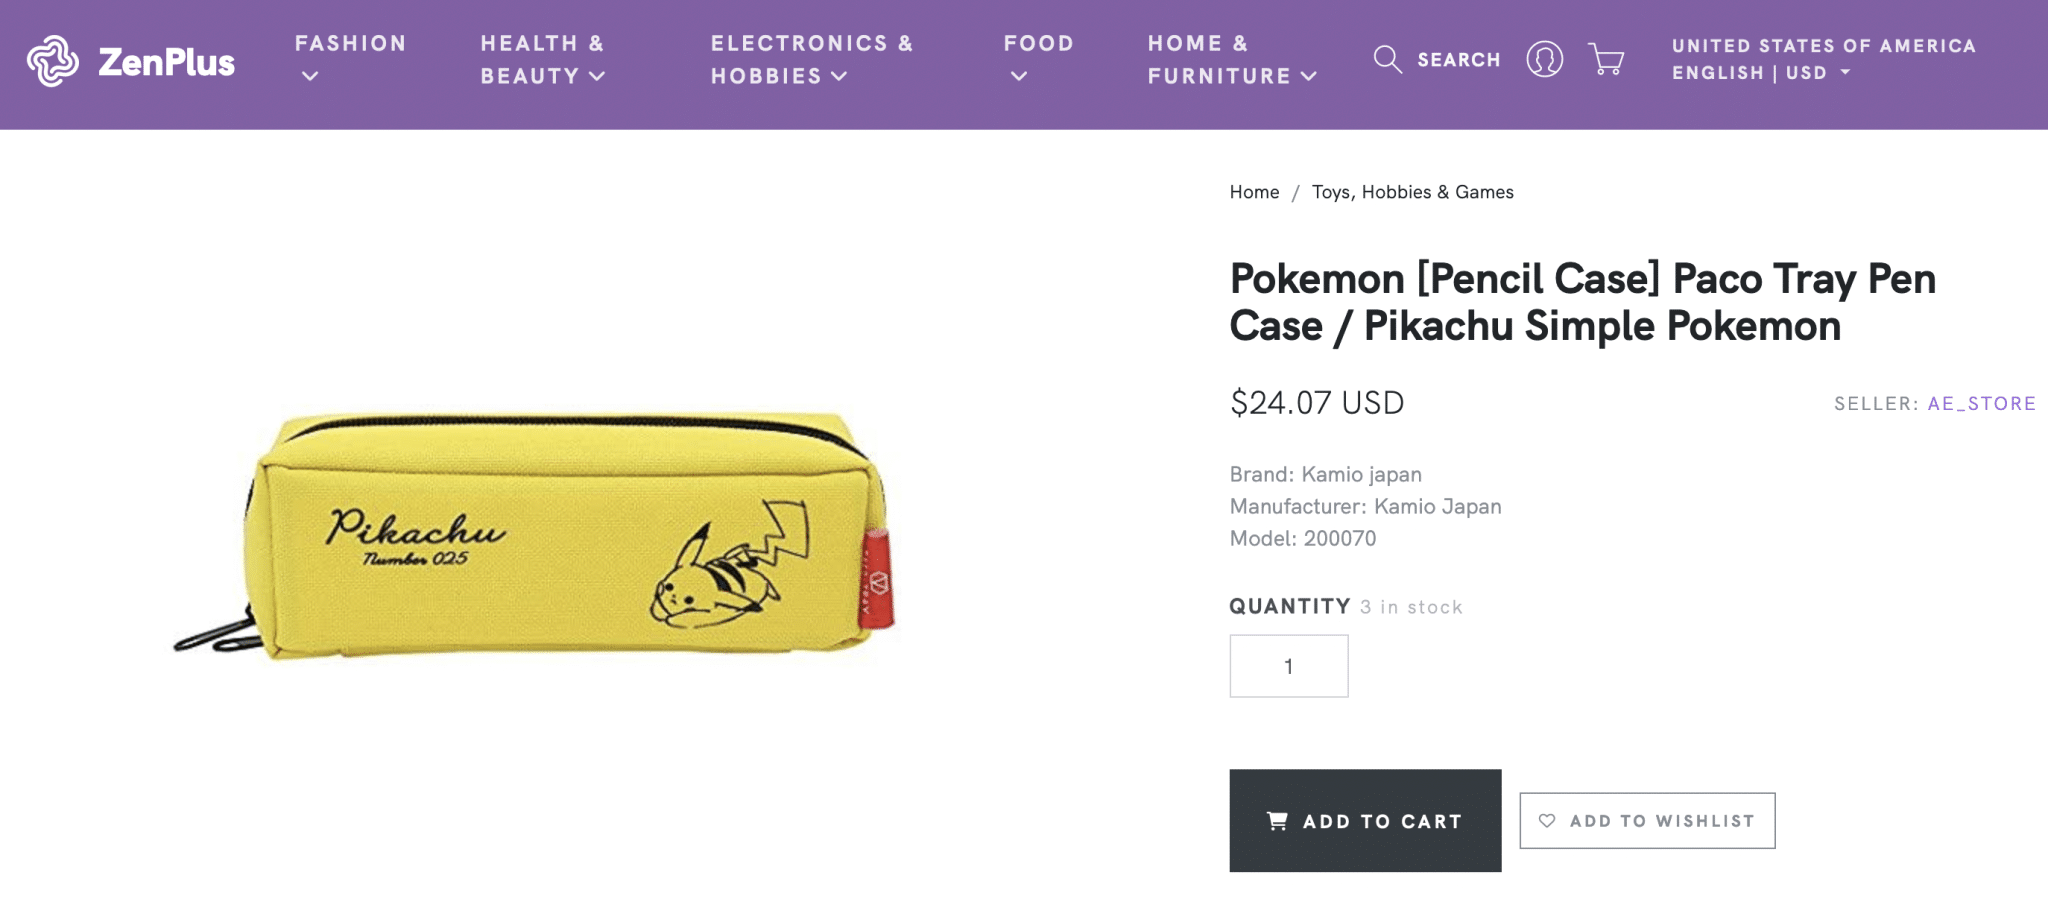 Pikachu pen case